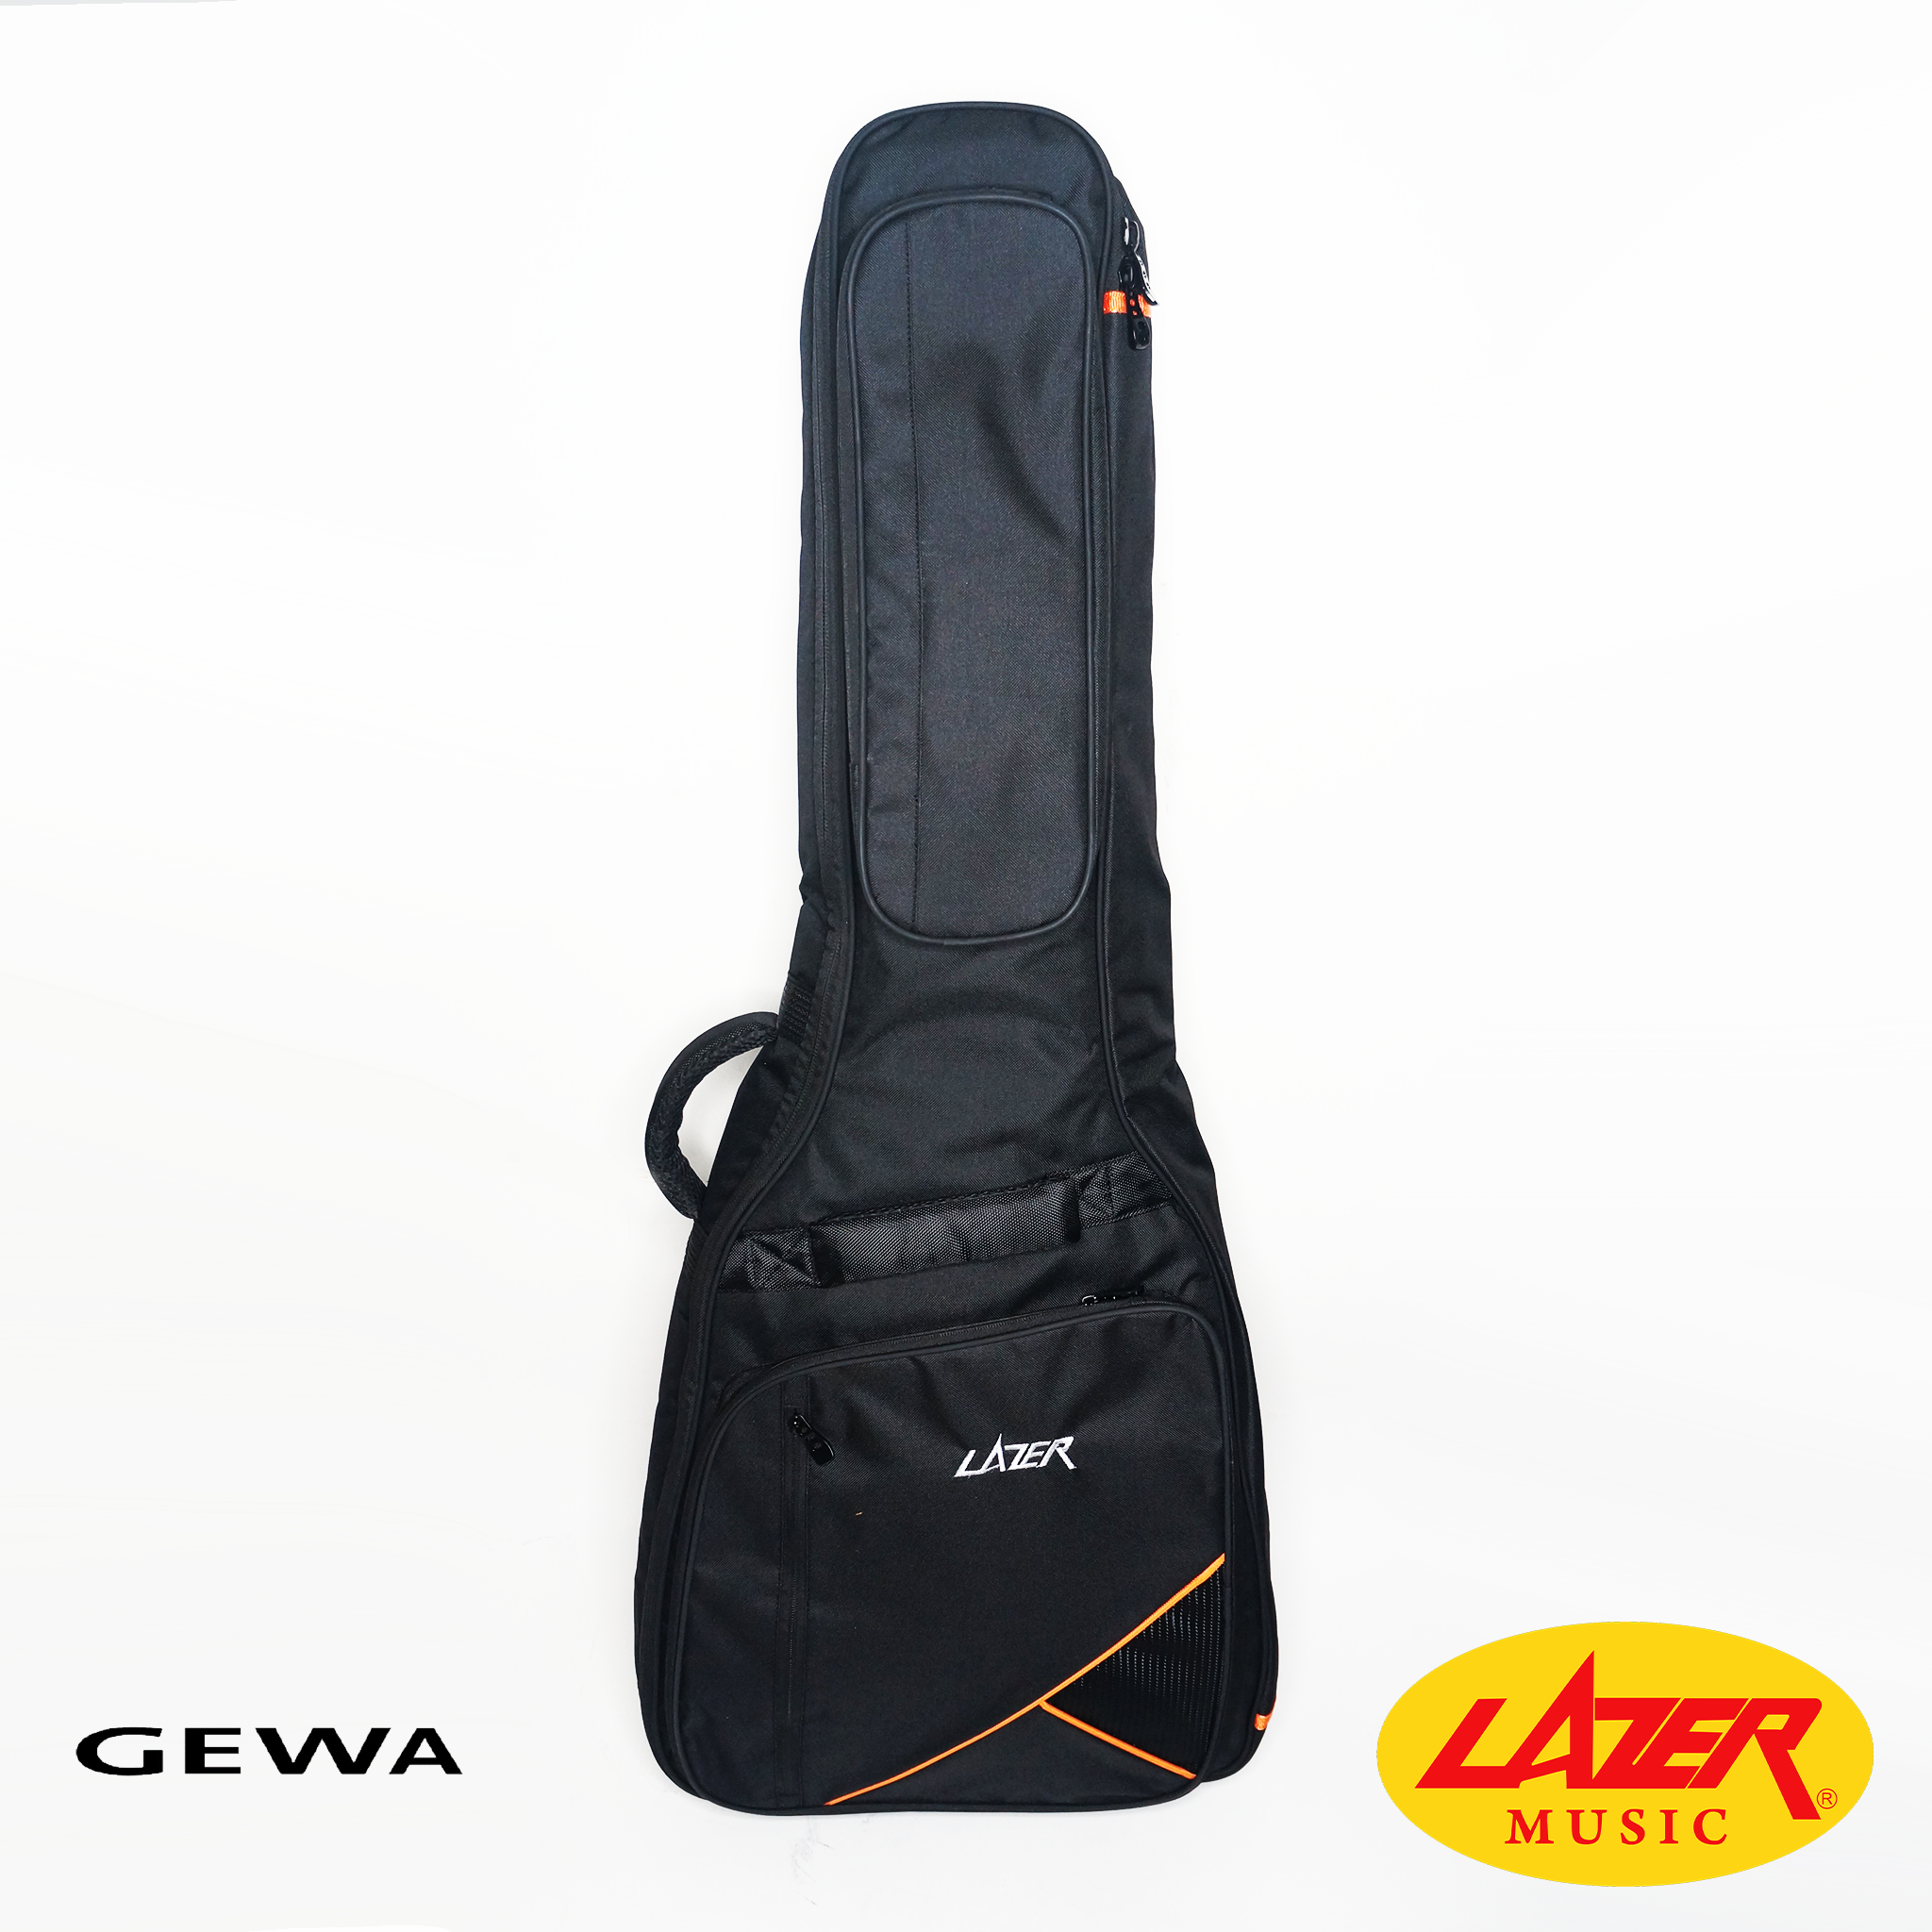 Lazer GEWA-20-W Acoustic Guitar Gig Bag